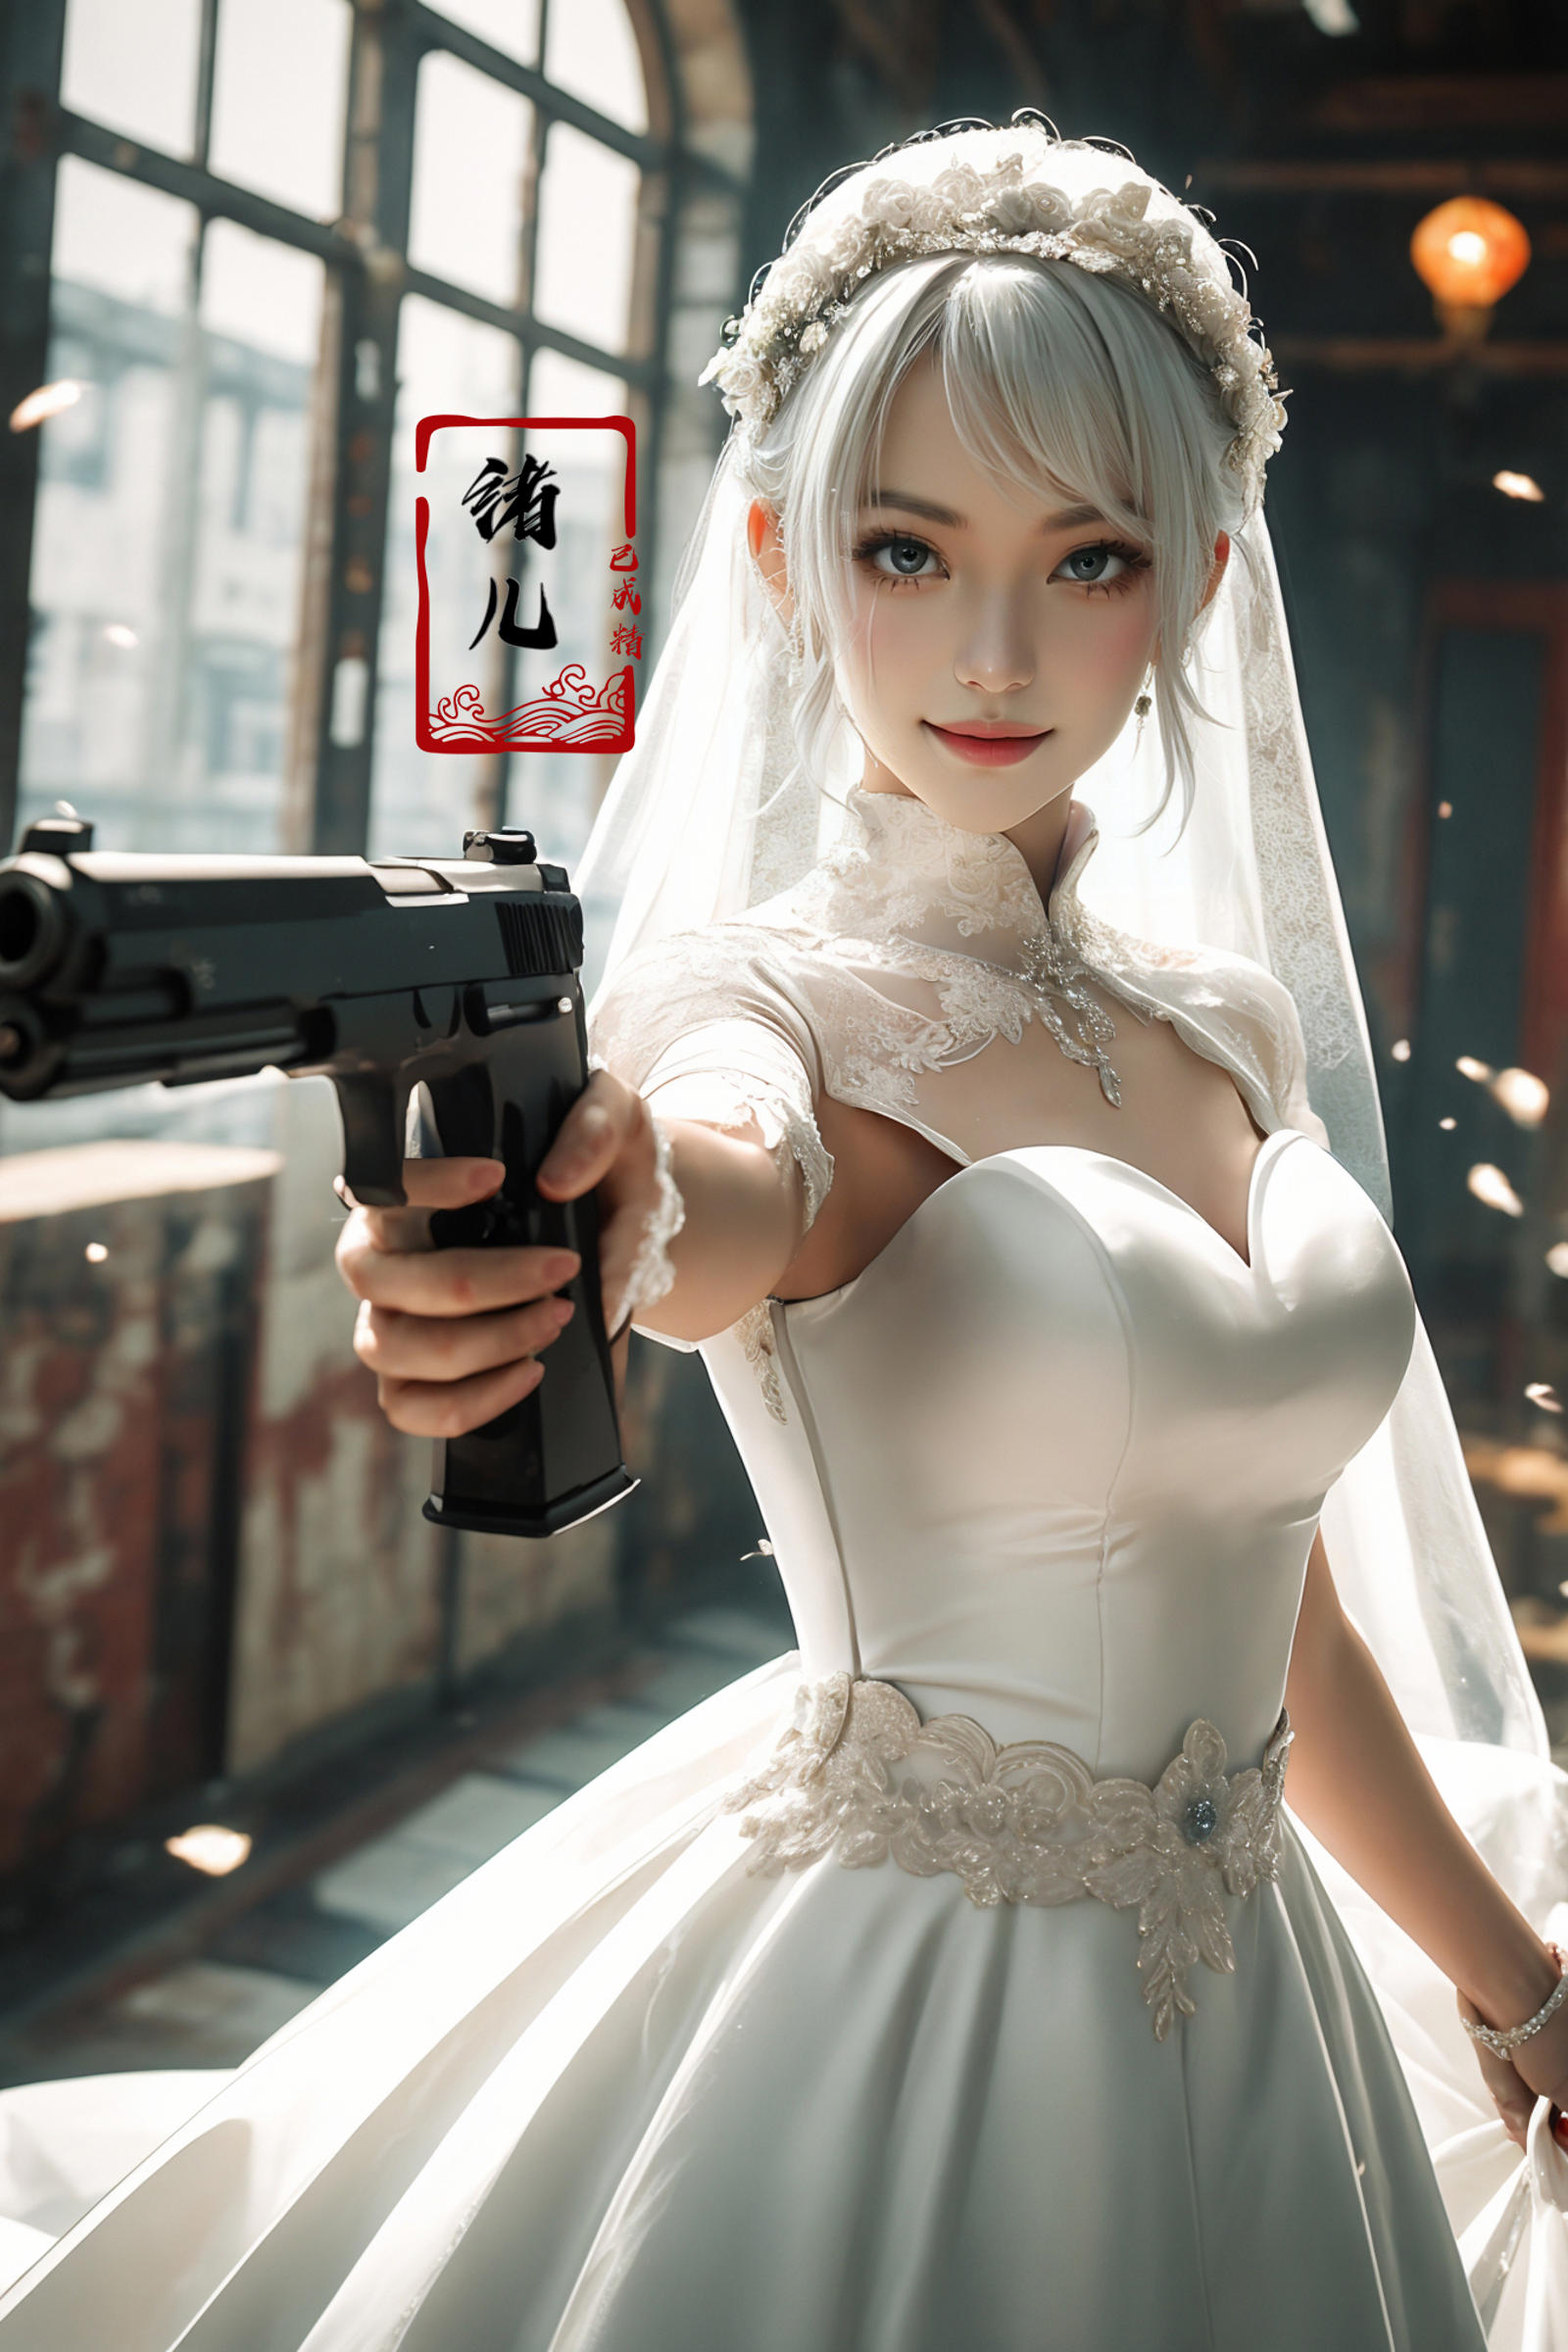 A cartoon image of a bride holding a gun.